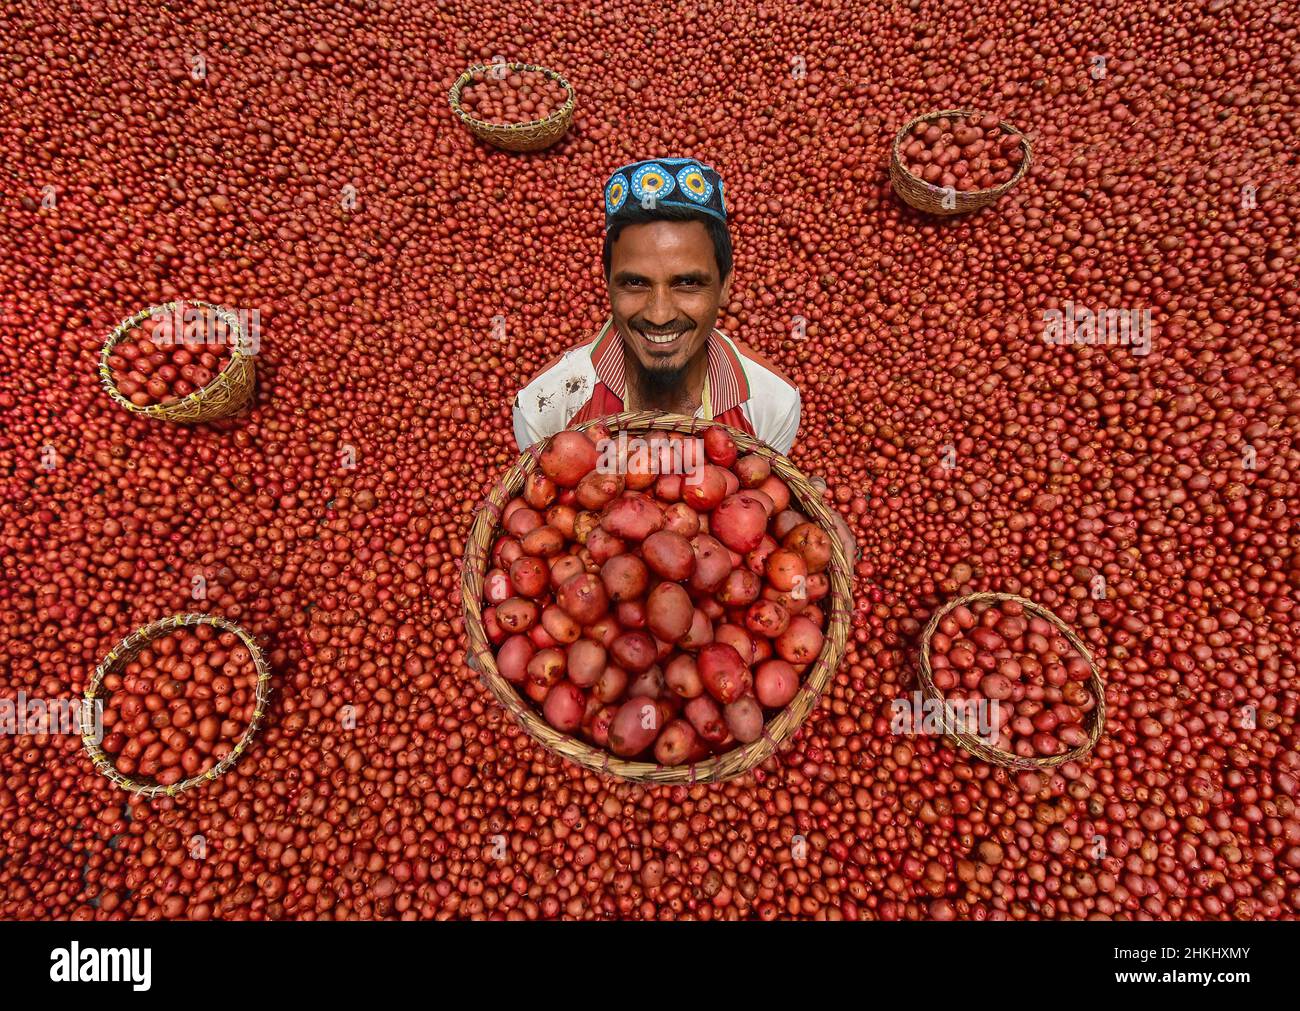 Auf einem Gemüsemarkt werden Tausende von leuchtend roten Kartoffeln gewaschen und sortiert. Stockfoto